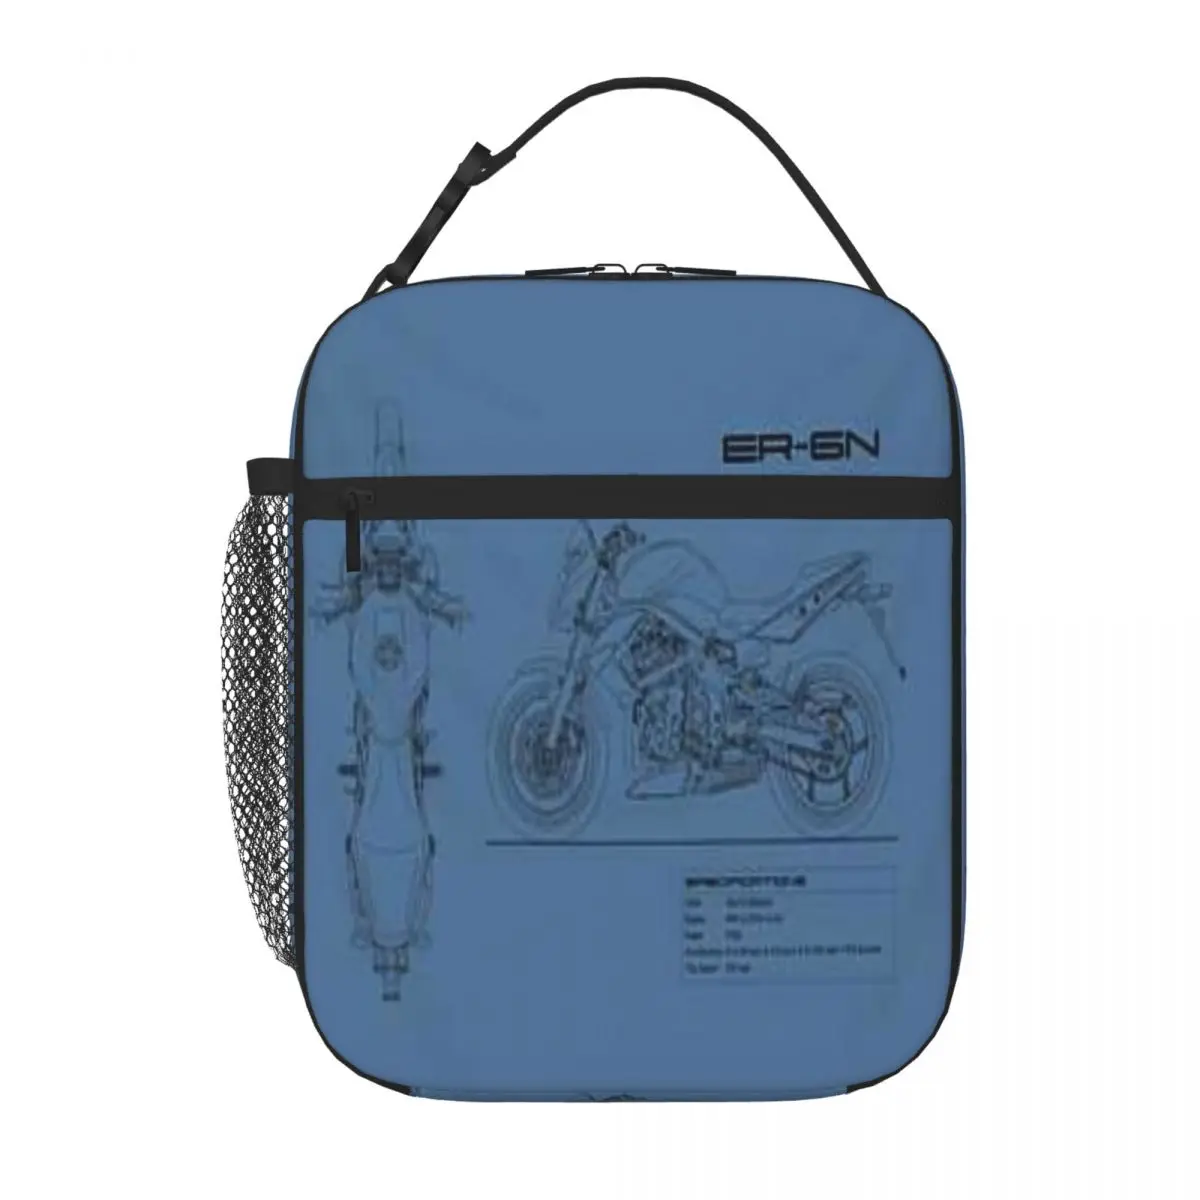 Схема A Er 6n, мотоциклетная сумка Mark Rogan, прозрачная сумка для ланча, сумка для пикника, Ланчбокс, Термосумка для женщин